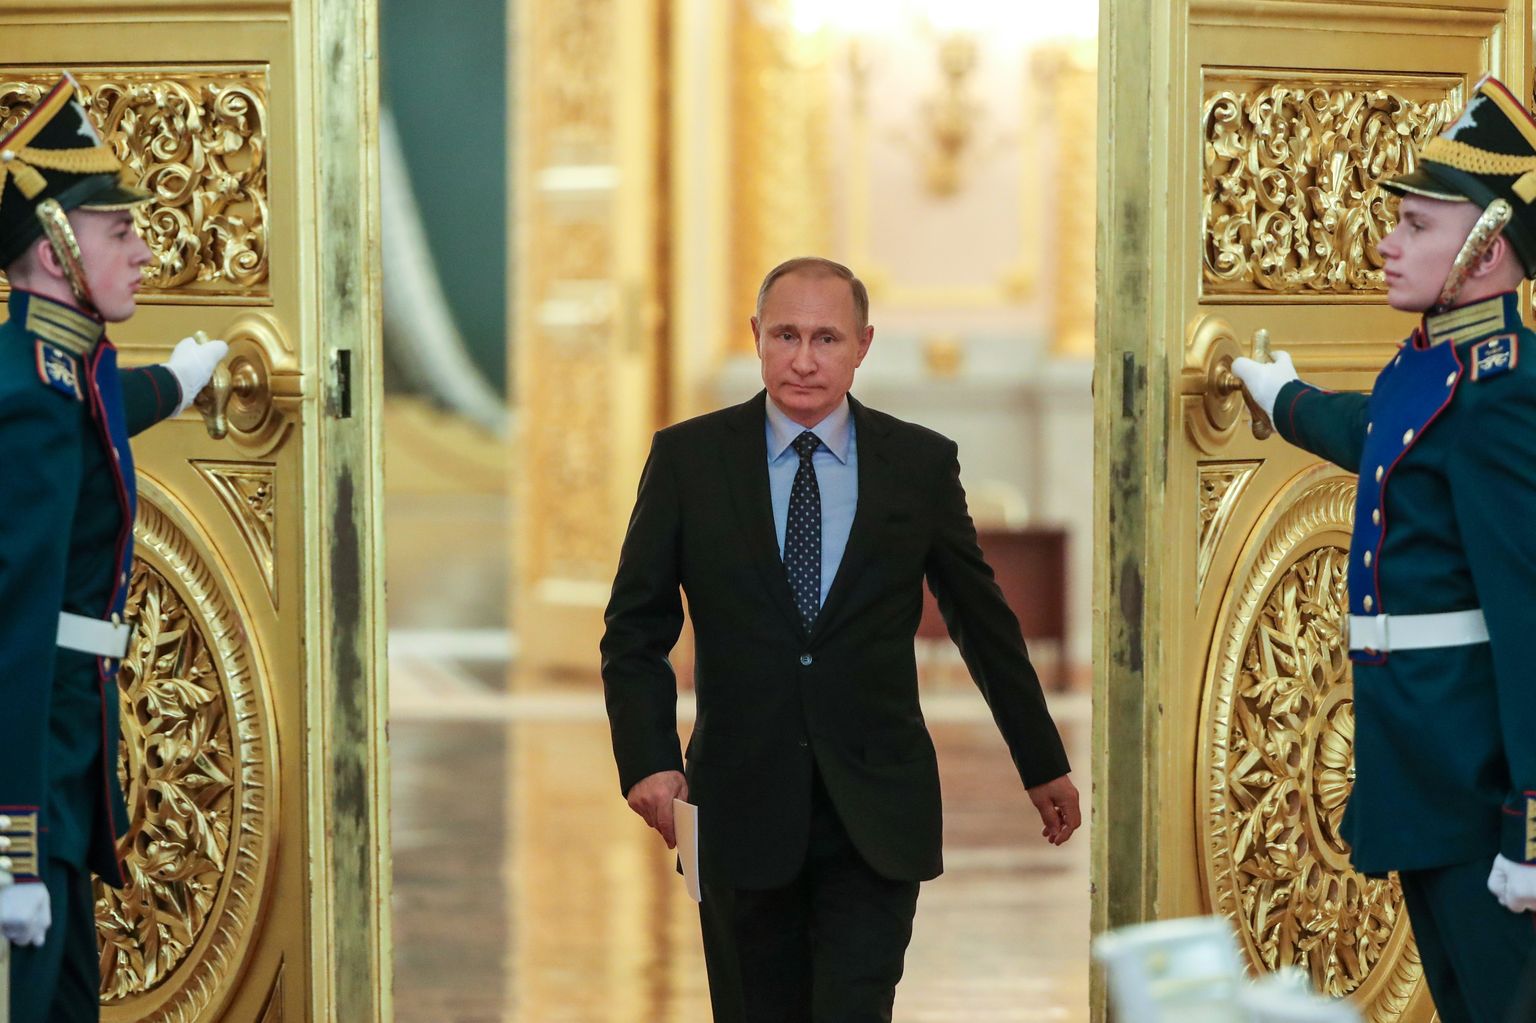 Venemaa president Vladimir Putin on olnud riigipea ametis kaks 4-aastast ametiaega aastatel 2000-2008 ja pärast presidendi ametiaja pikendamist kuuele aastale kolmanda ametiaja alates 2012. aastast.